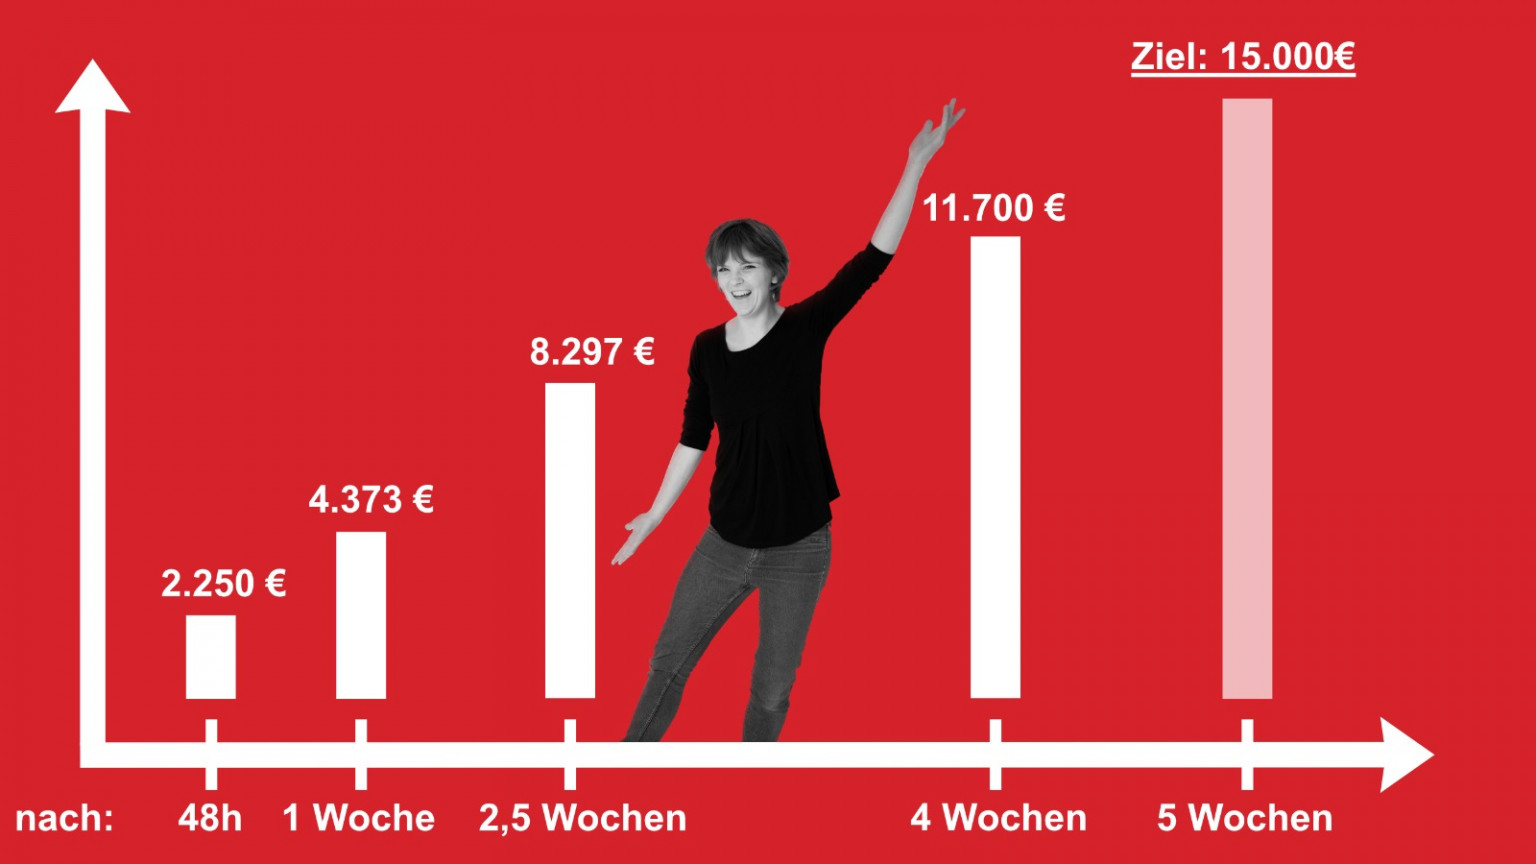 Fast am Ziel: Anna Rasehorn will 15.000 Euro für ihren Wahlkampf per Crowdfunding sammeln.